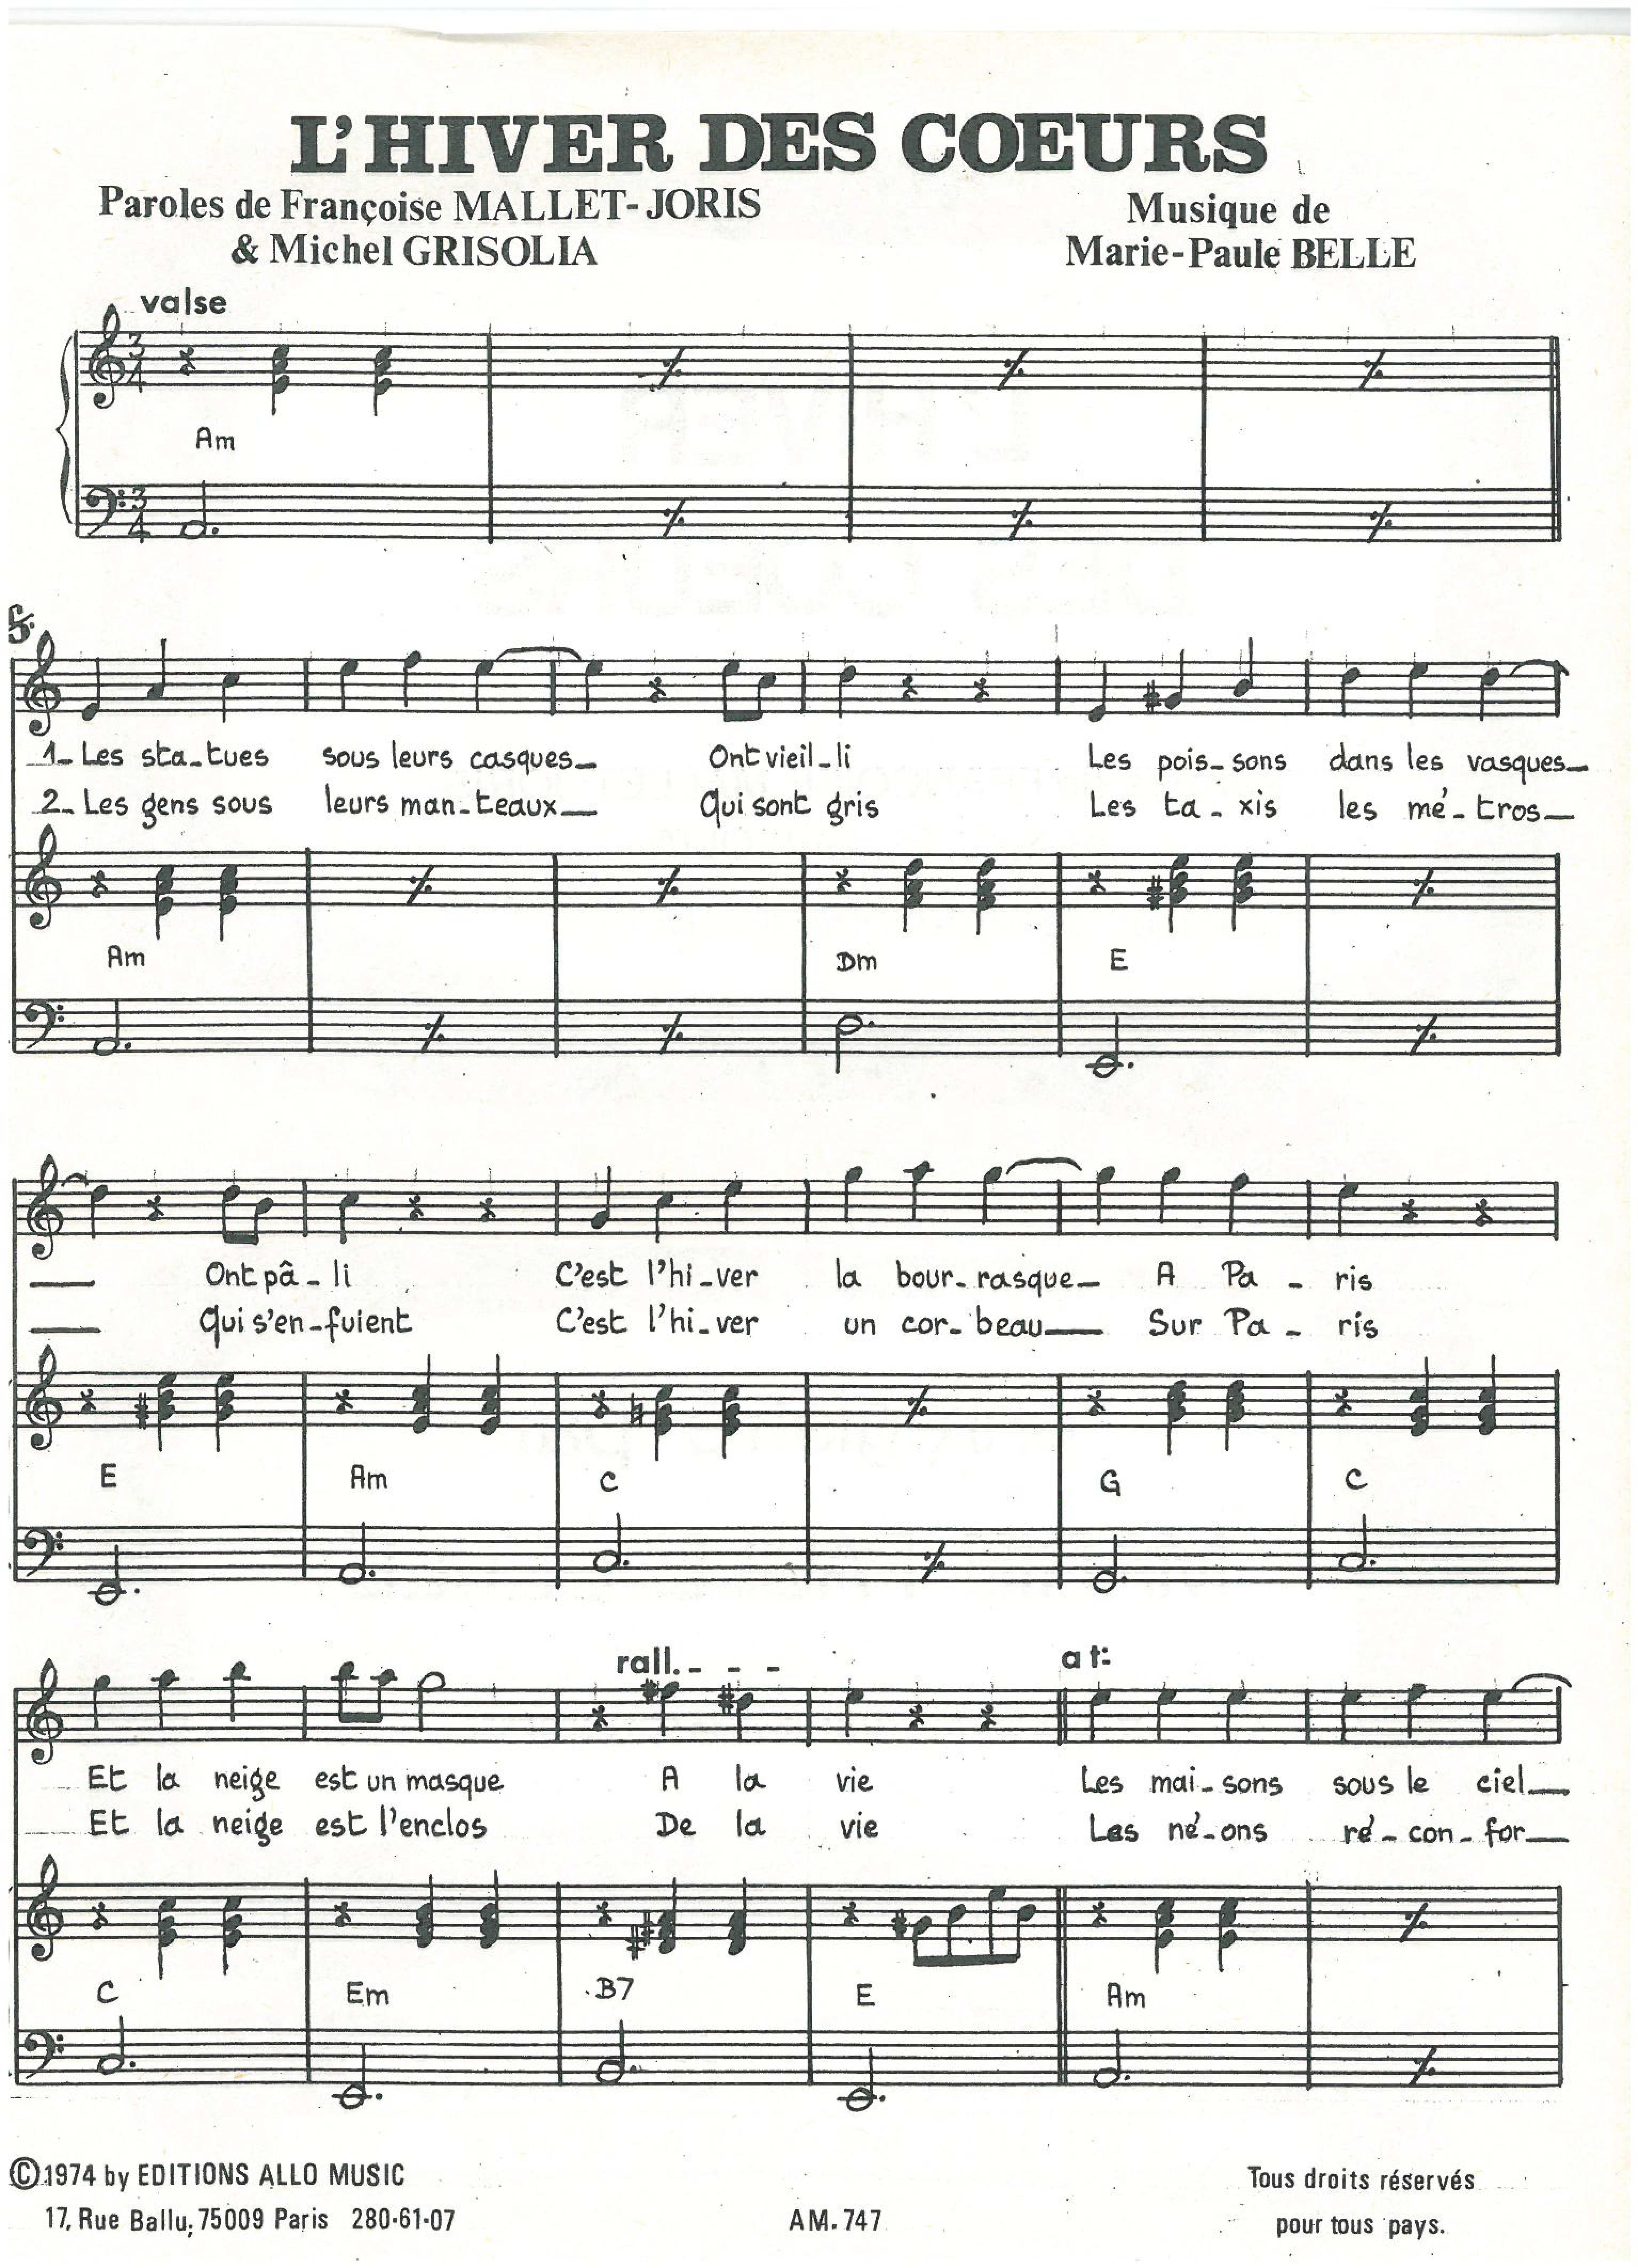 Michel Grisolia, Françoise Mallet-Joris, Marie Paule Belle L'hiver Des Coeurs Sheet Music Notes & Chords for Piano & Vocal - Download or Print PDF